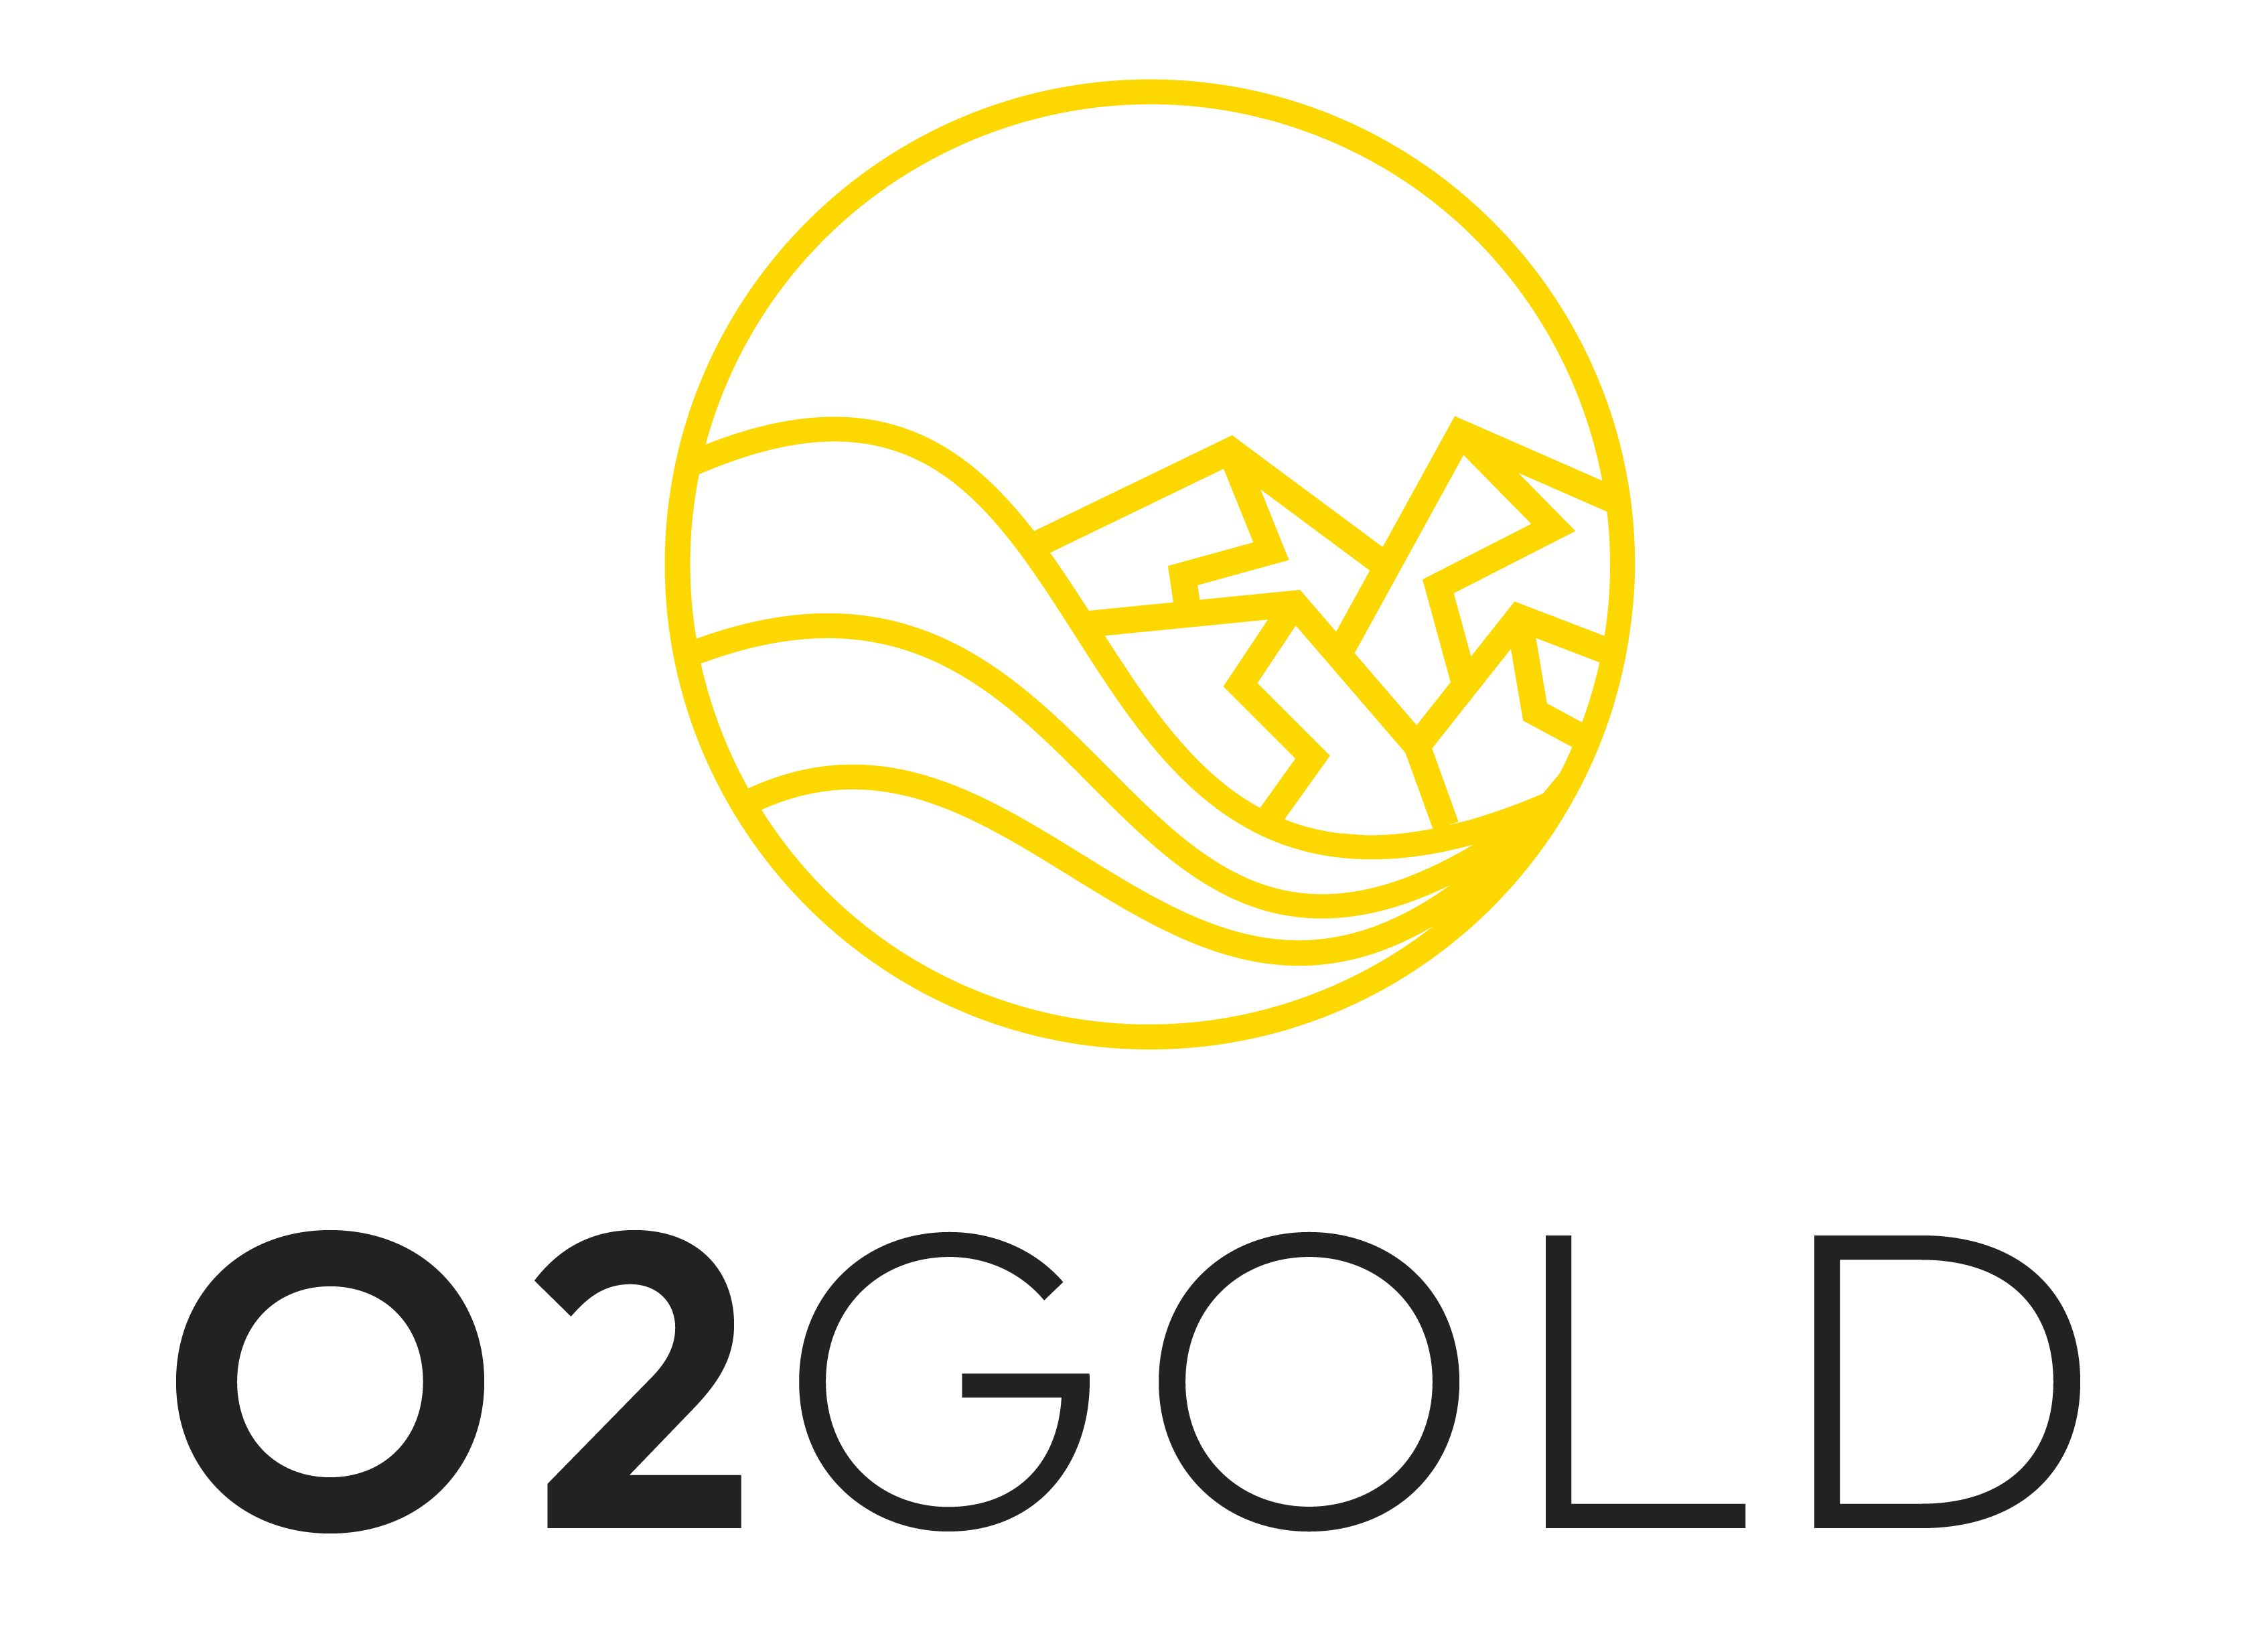 02Gold Logo (White) (002).jpg